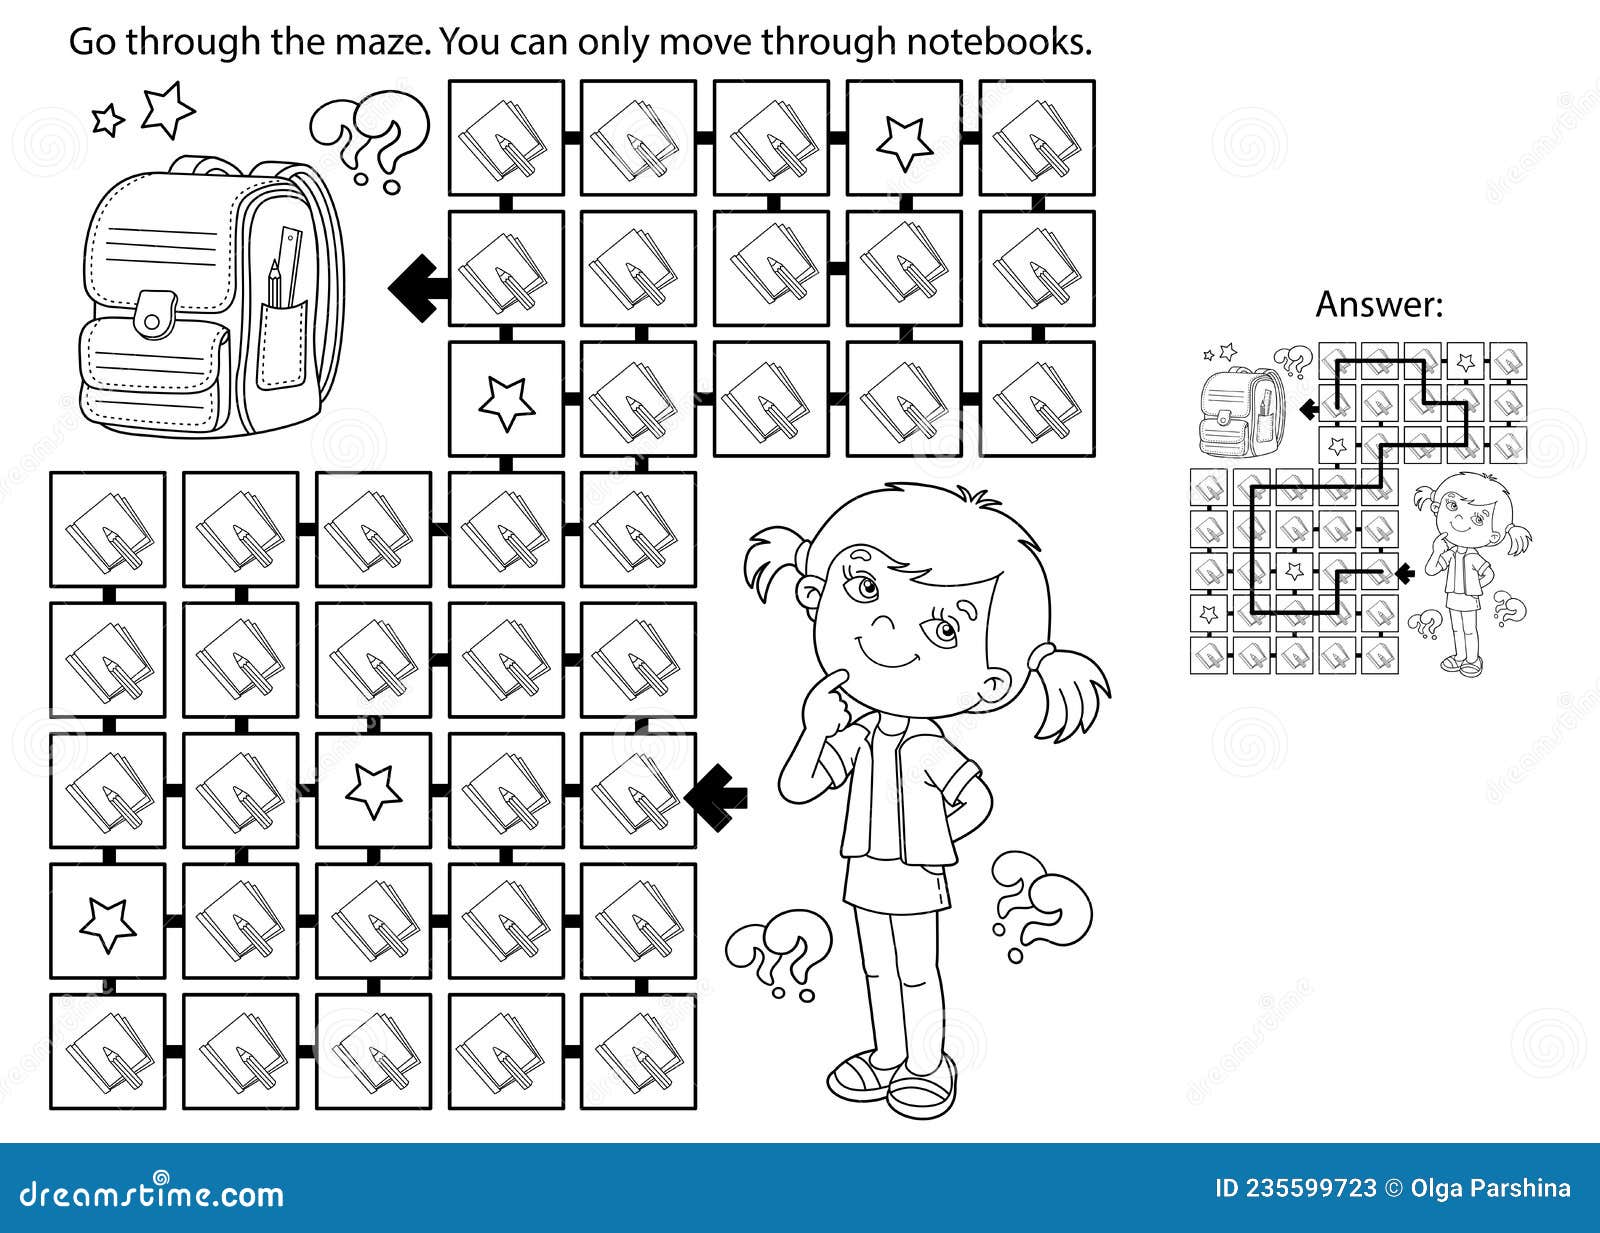 Desenho de Jogo do Labirinto Turma da Monica para colorir